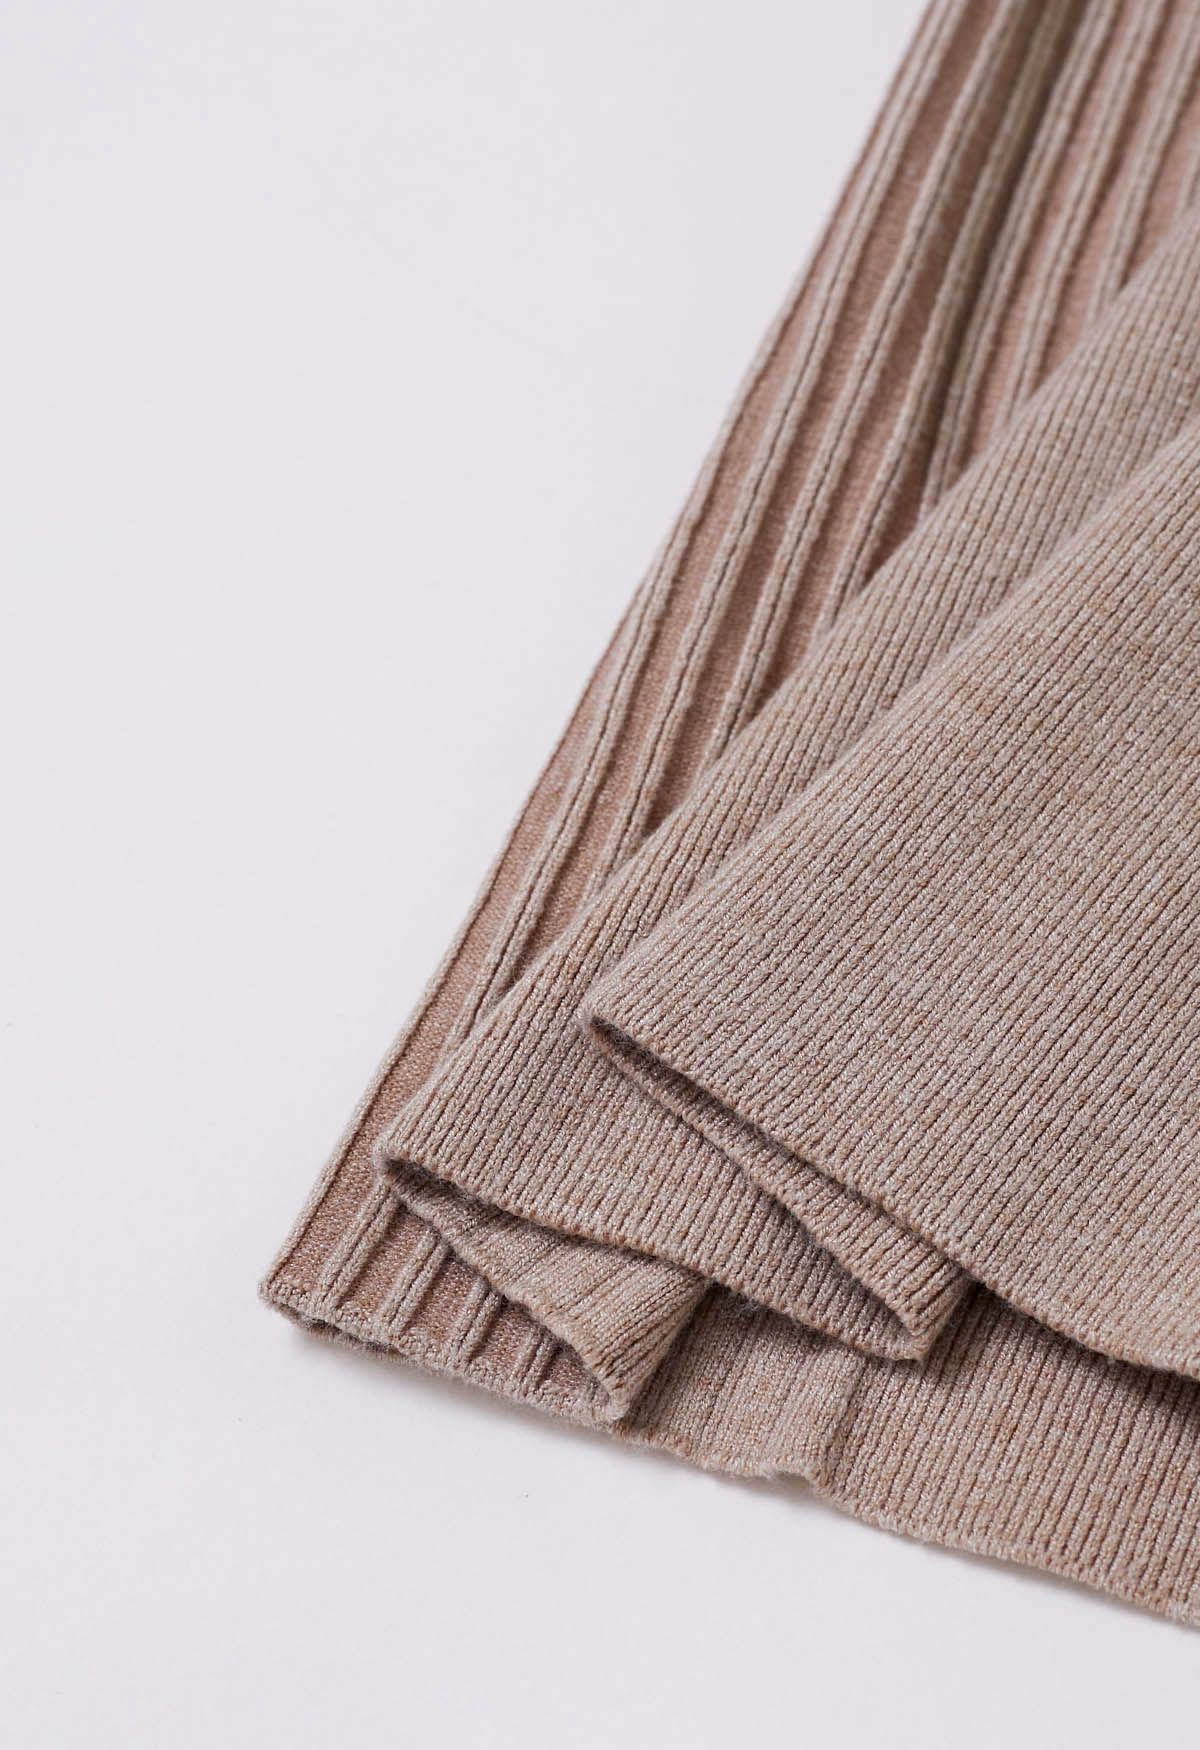 Pantalon en tricot côtelé avec cordon de serrage à la taille, couleur avoine